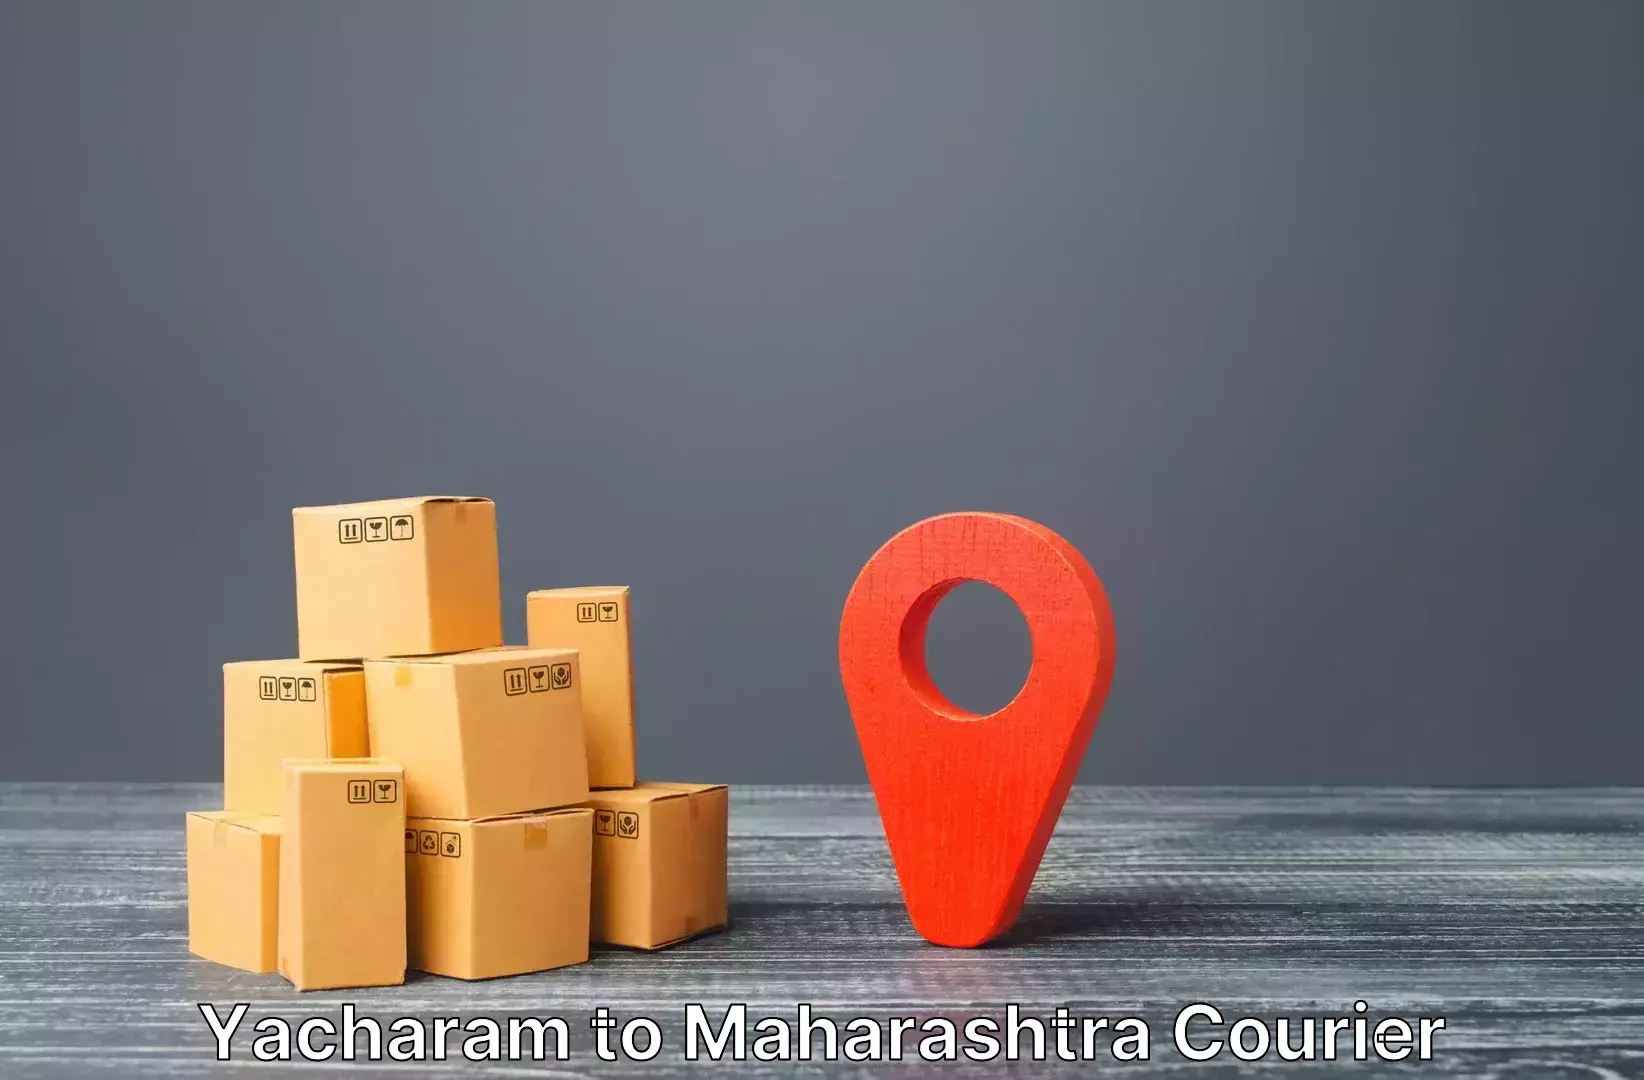 Automated luggage transport Yacharam to Maharashtra